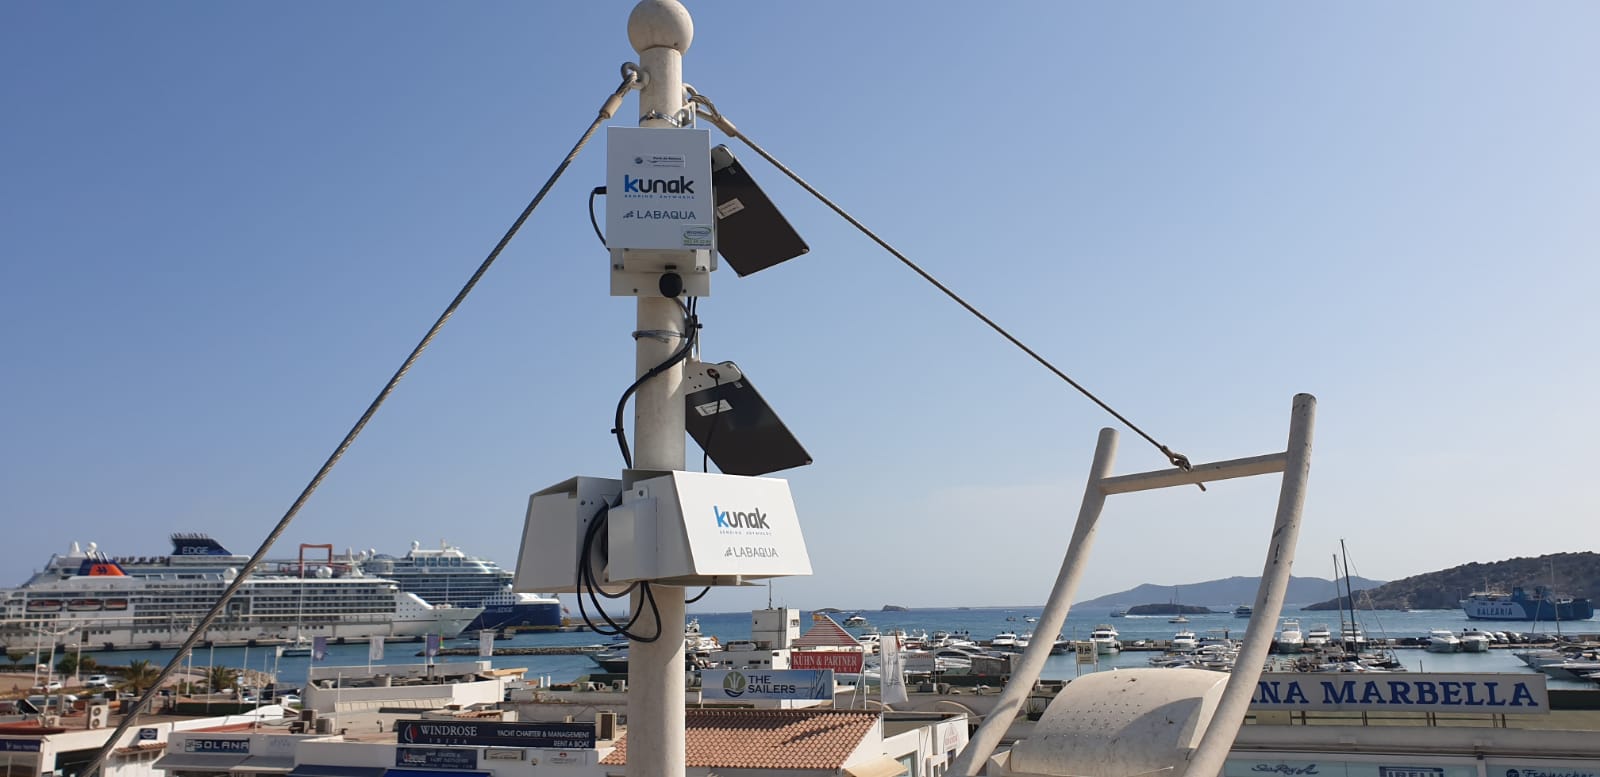 L'APB instal•la una xarxa de sensors per mesurar la contaminació de l'aire dels seus ports